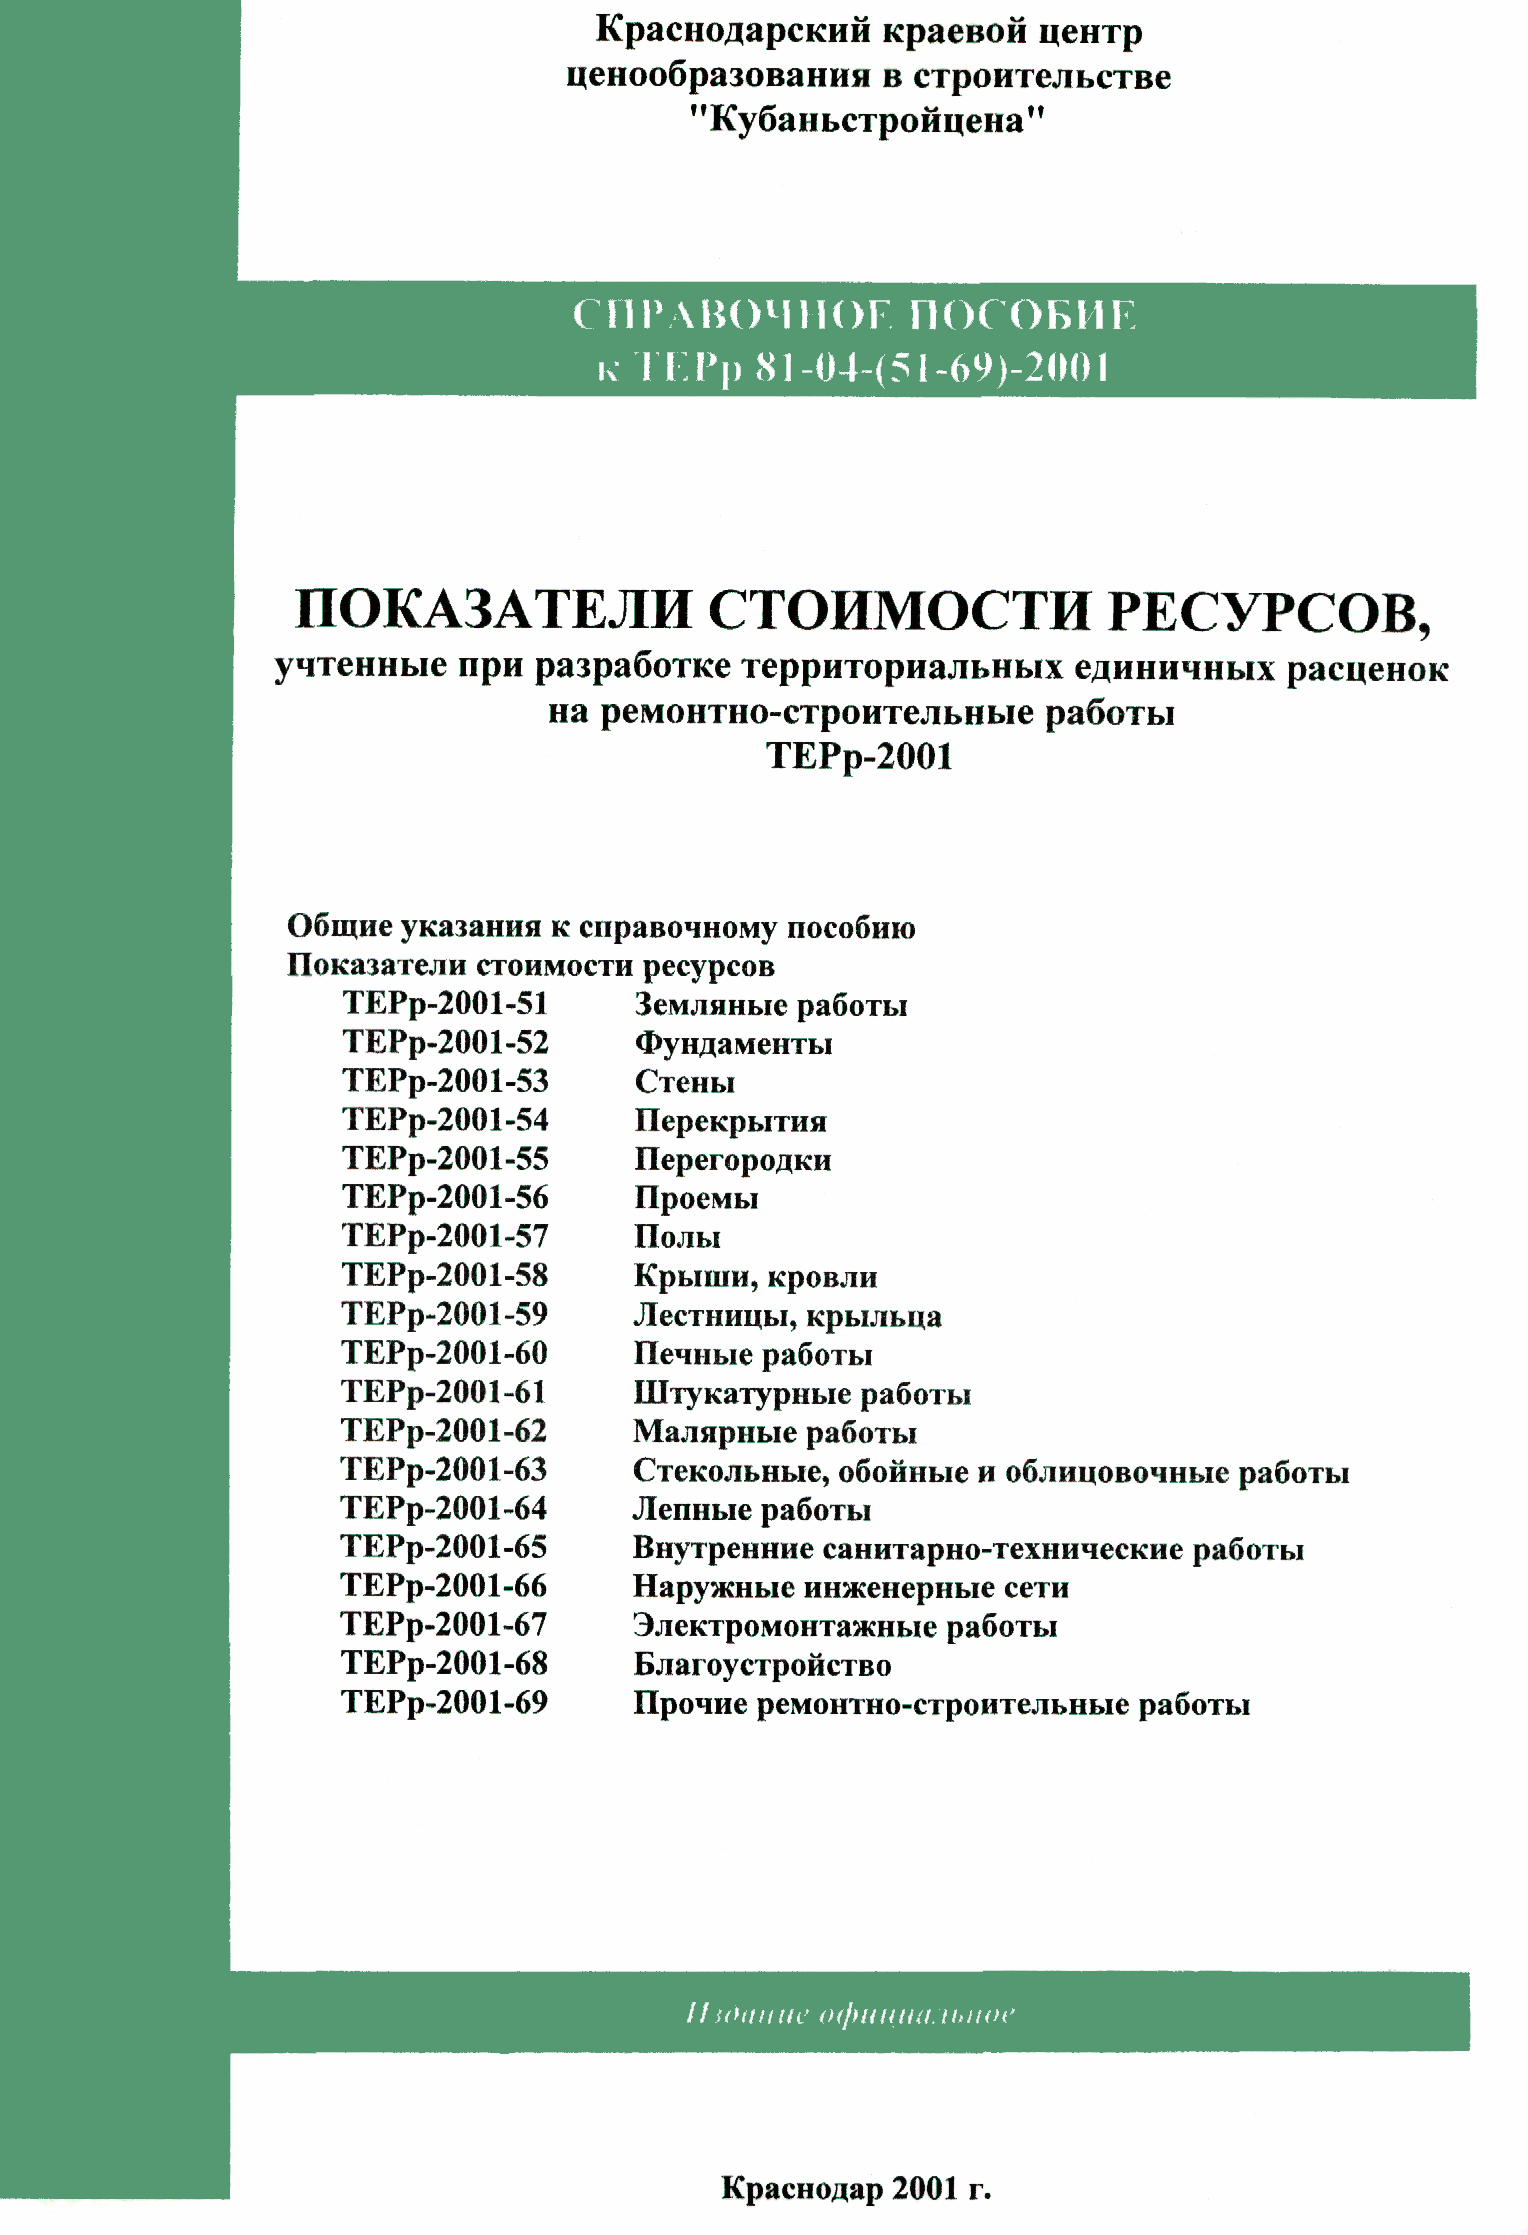 Справочное пособие к ТЕРр 81-04-66-2001